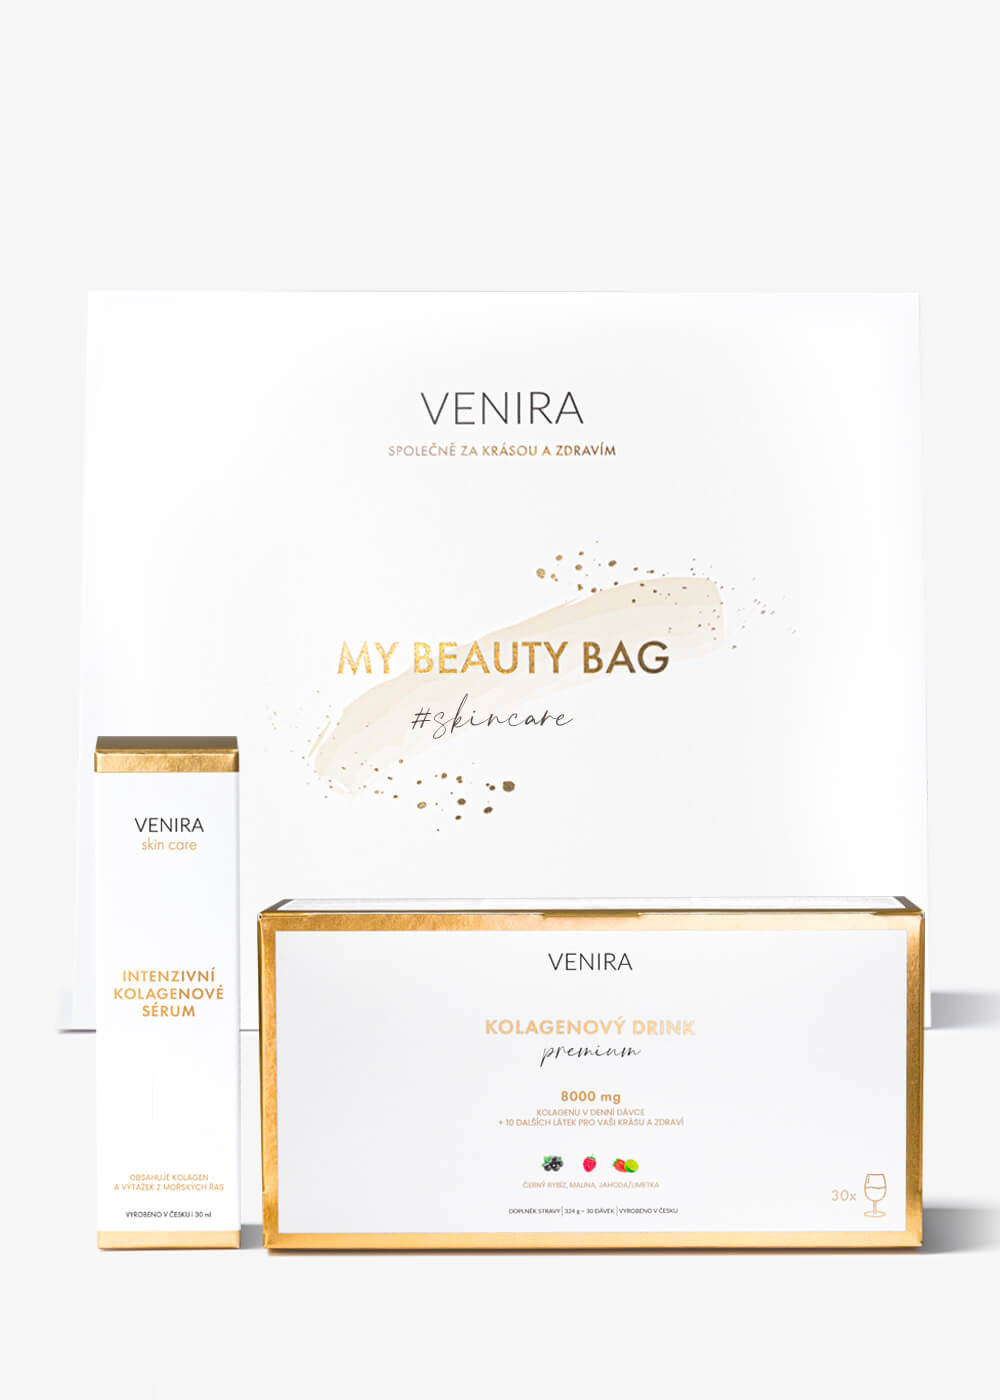 VENIRA beauty bag, dárková sada - intenzivní kolagenové sérum, PREMIUM kolagenový drink mix 3 příchutí